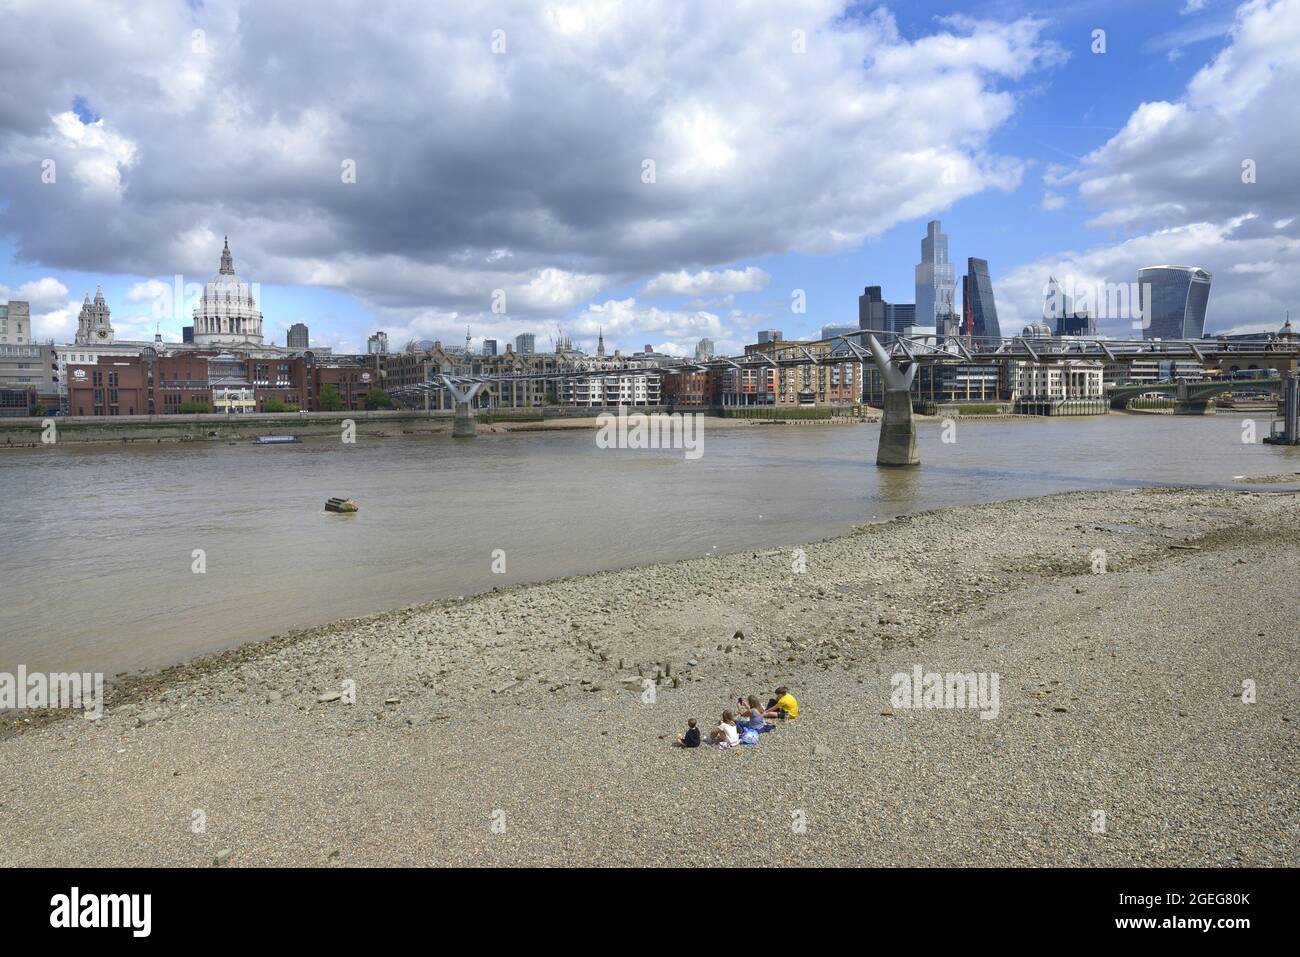 Londres, Angleterre, Royaume-Uni. Personnes sur la plage sur la rive sud de la Tamise à marée basse, en regardant vers la cathédrale St Paul et la ville de Londres Banque D'Images